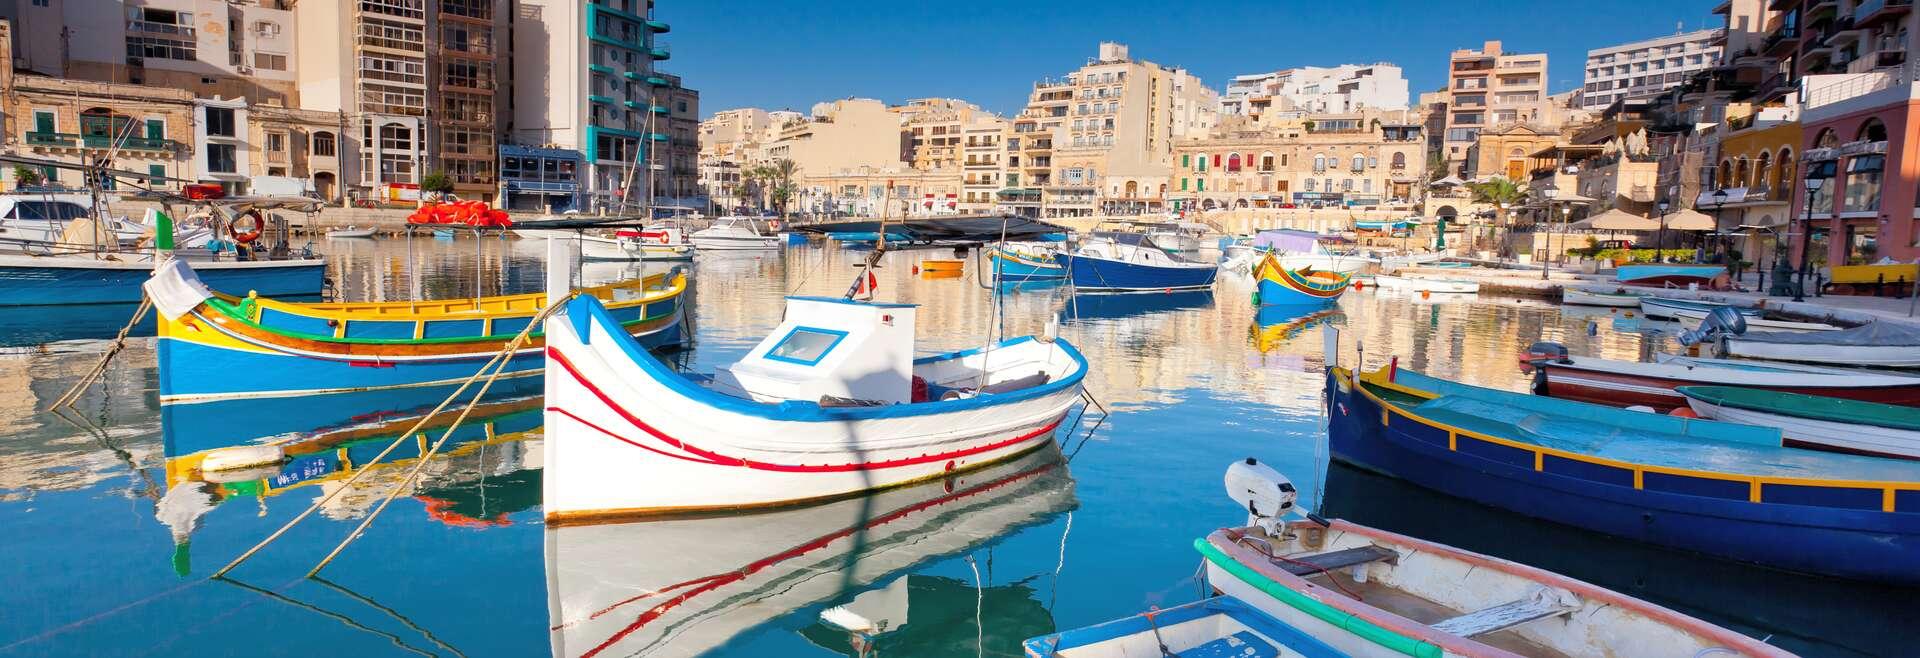 Sprachaufenthalt Malta, Sliema - Hafen